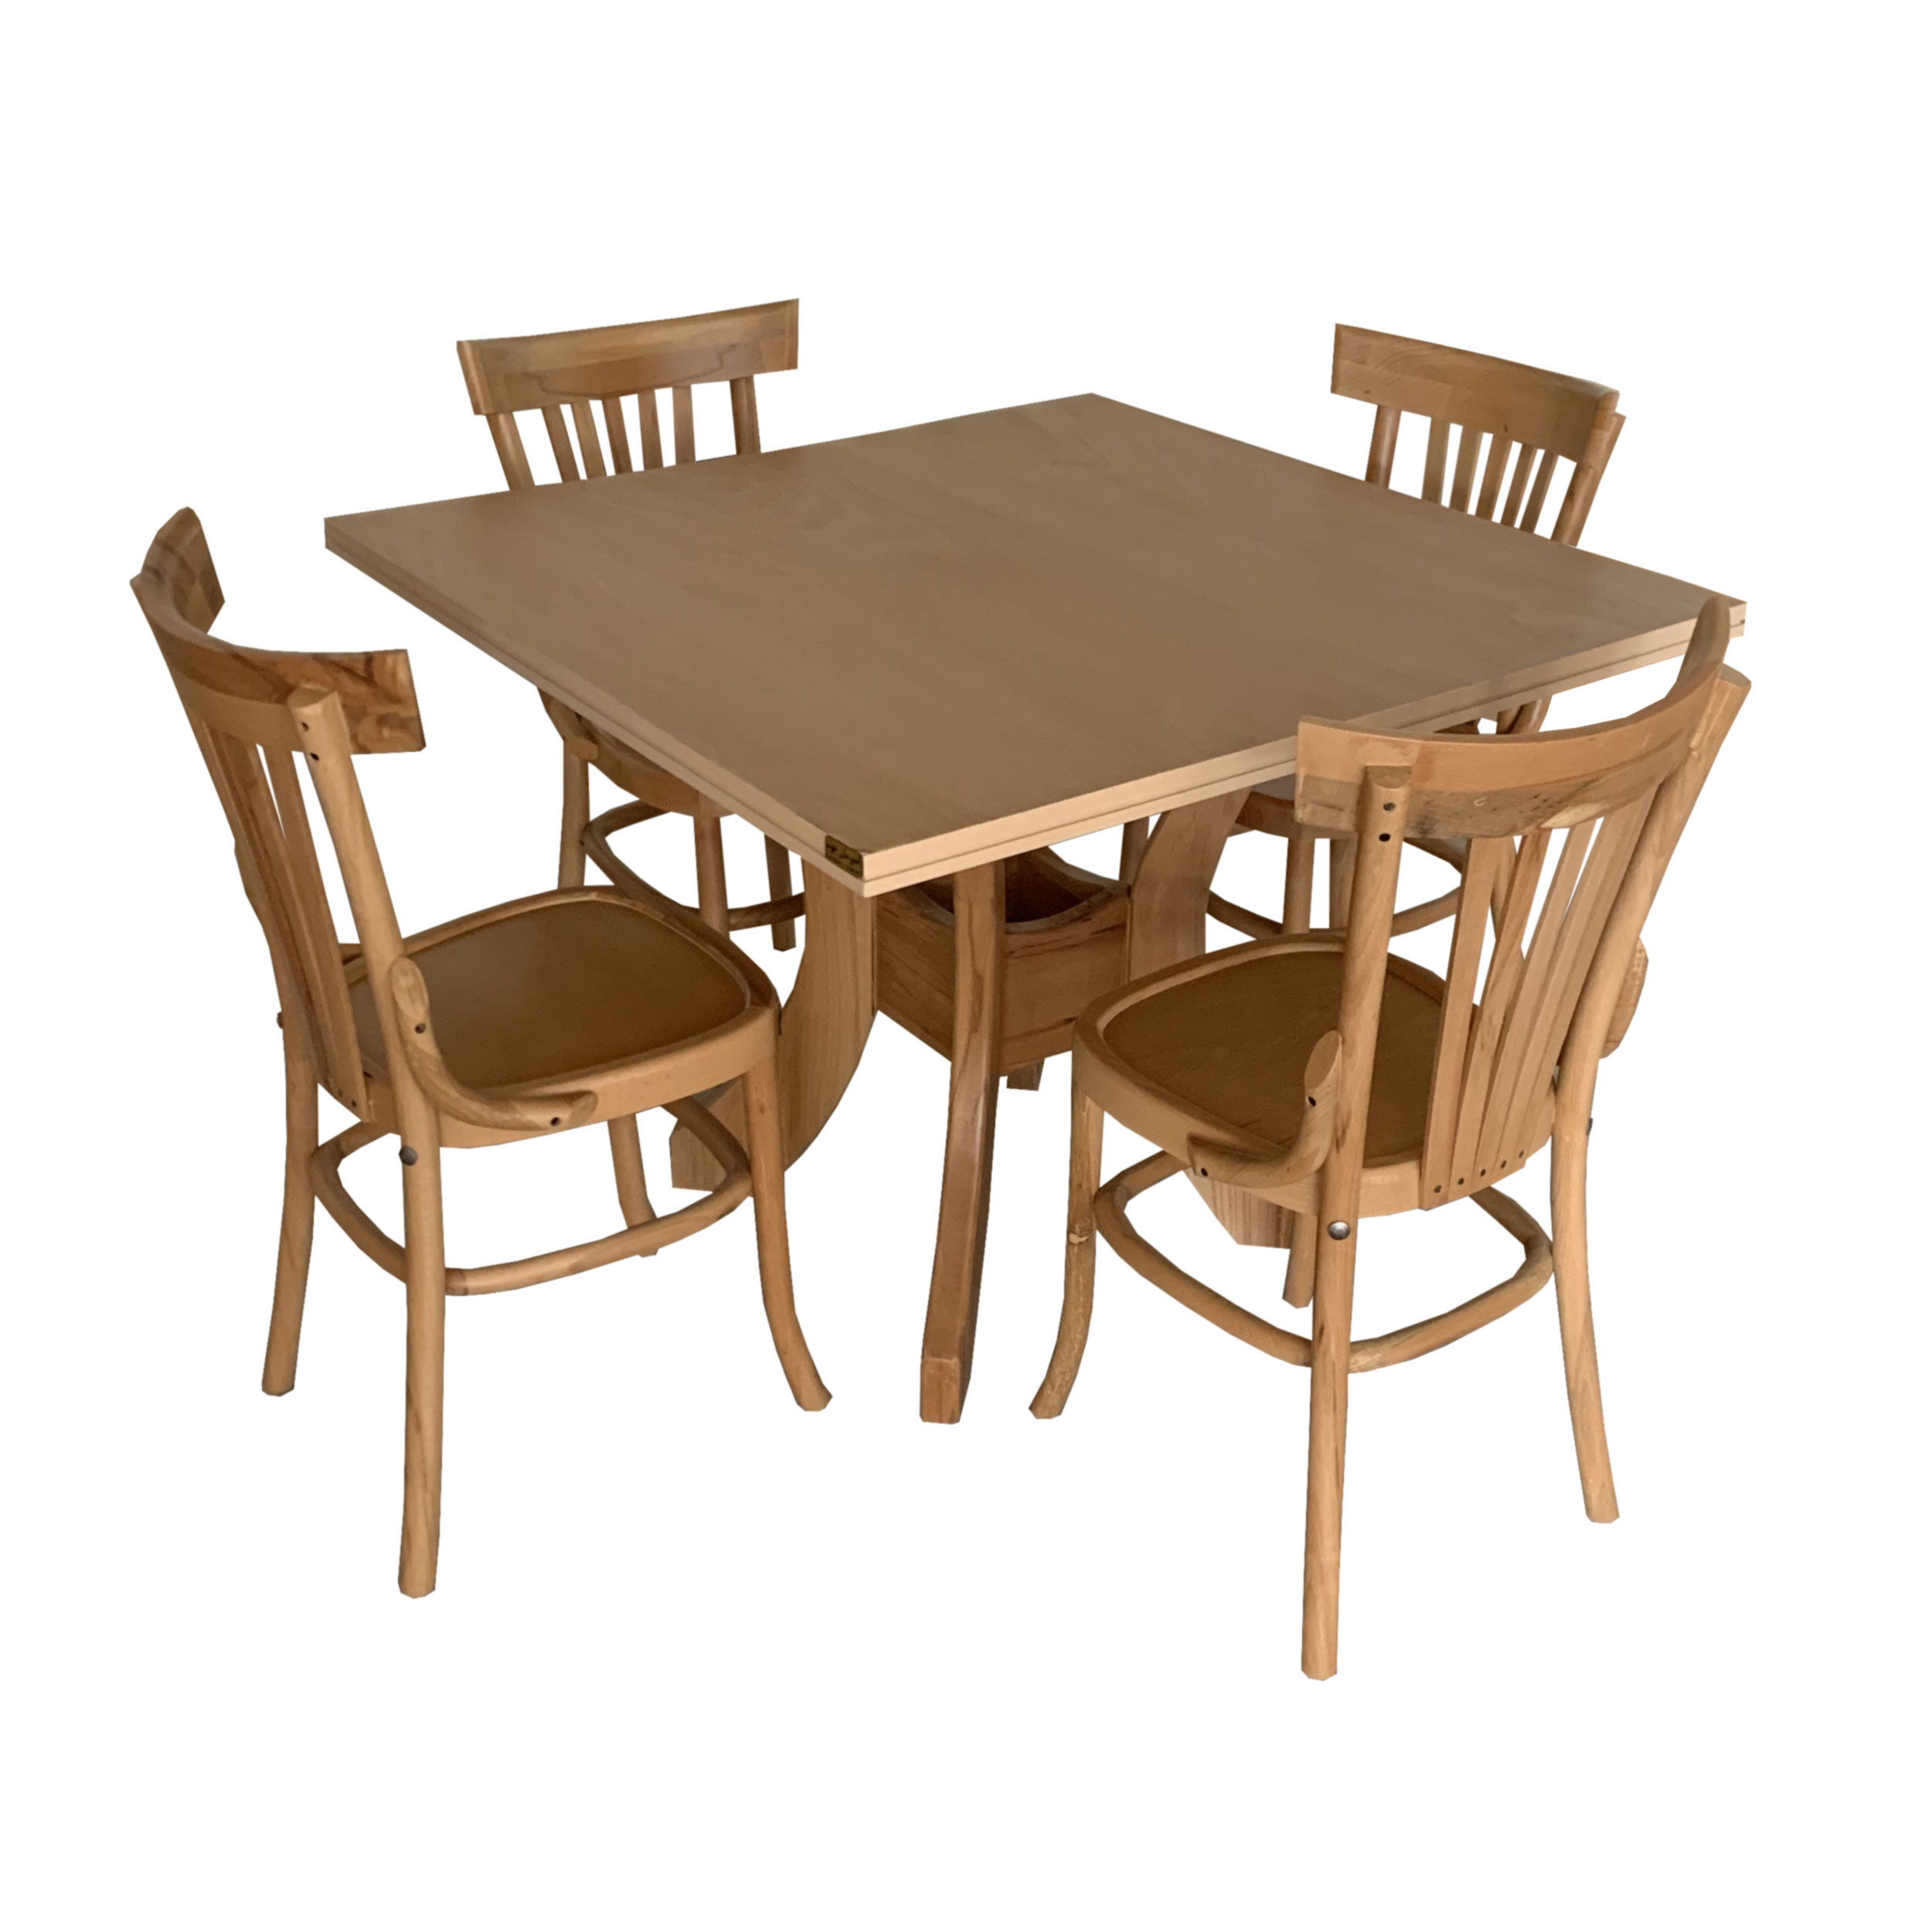 میز و صندلی ناهار خوری اسپرسان چوب کد Sm52